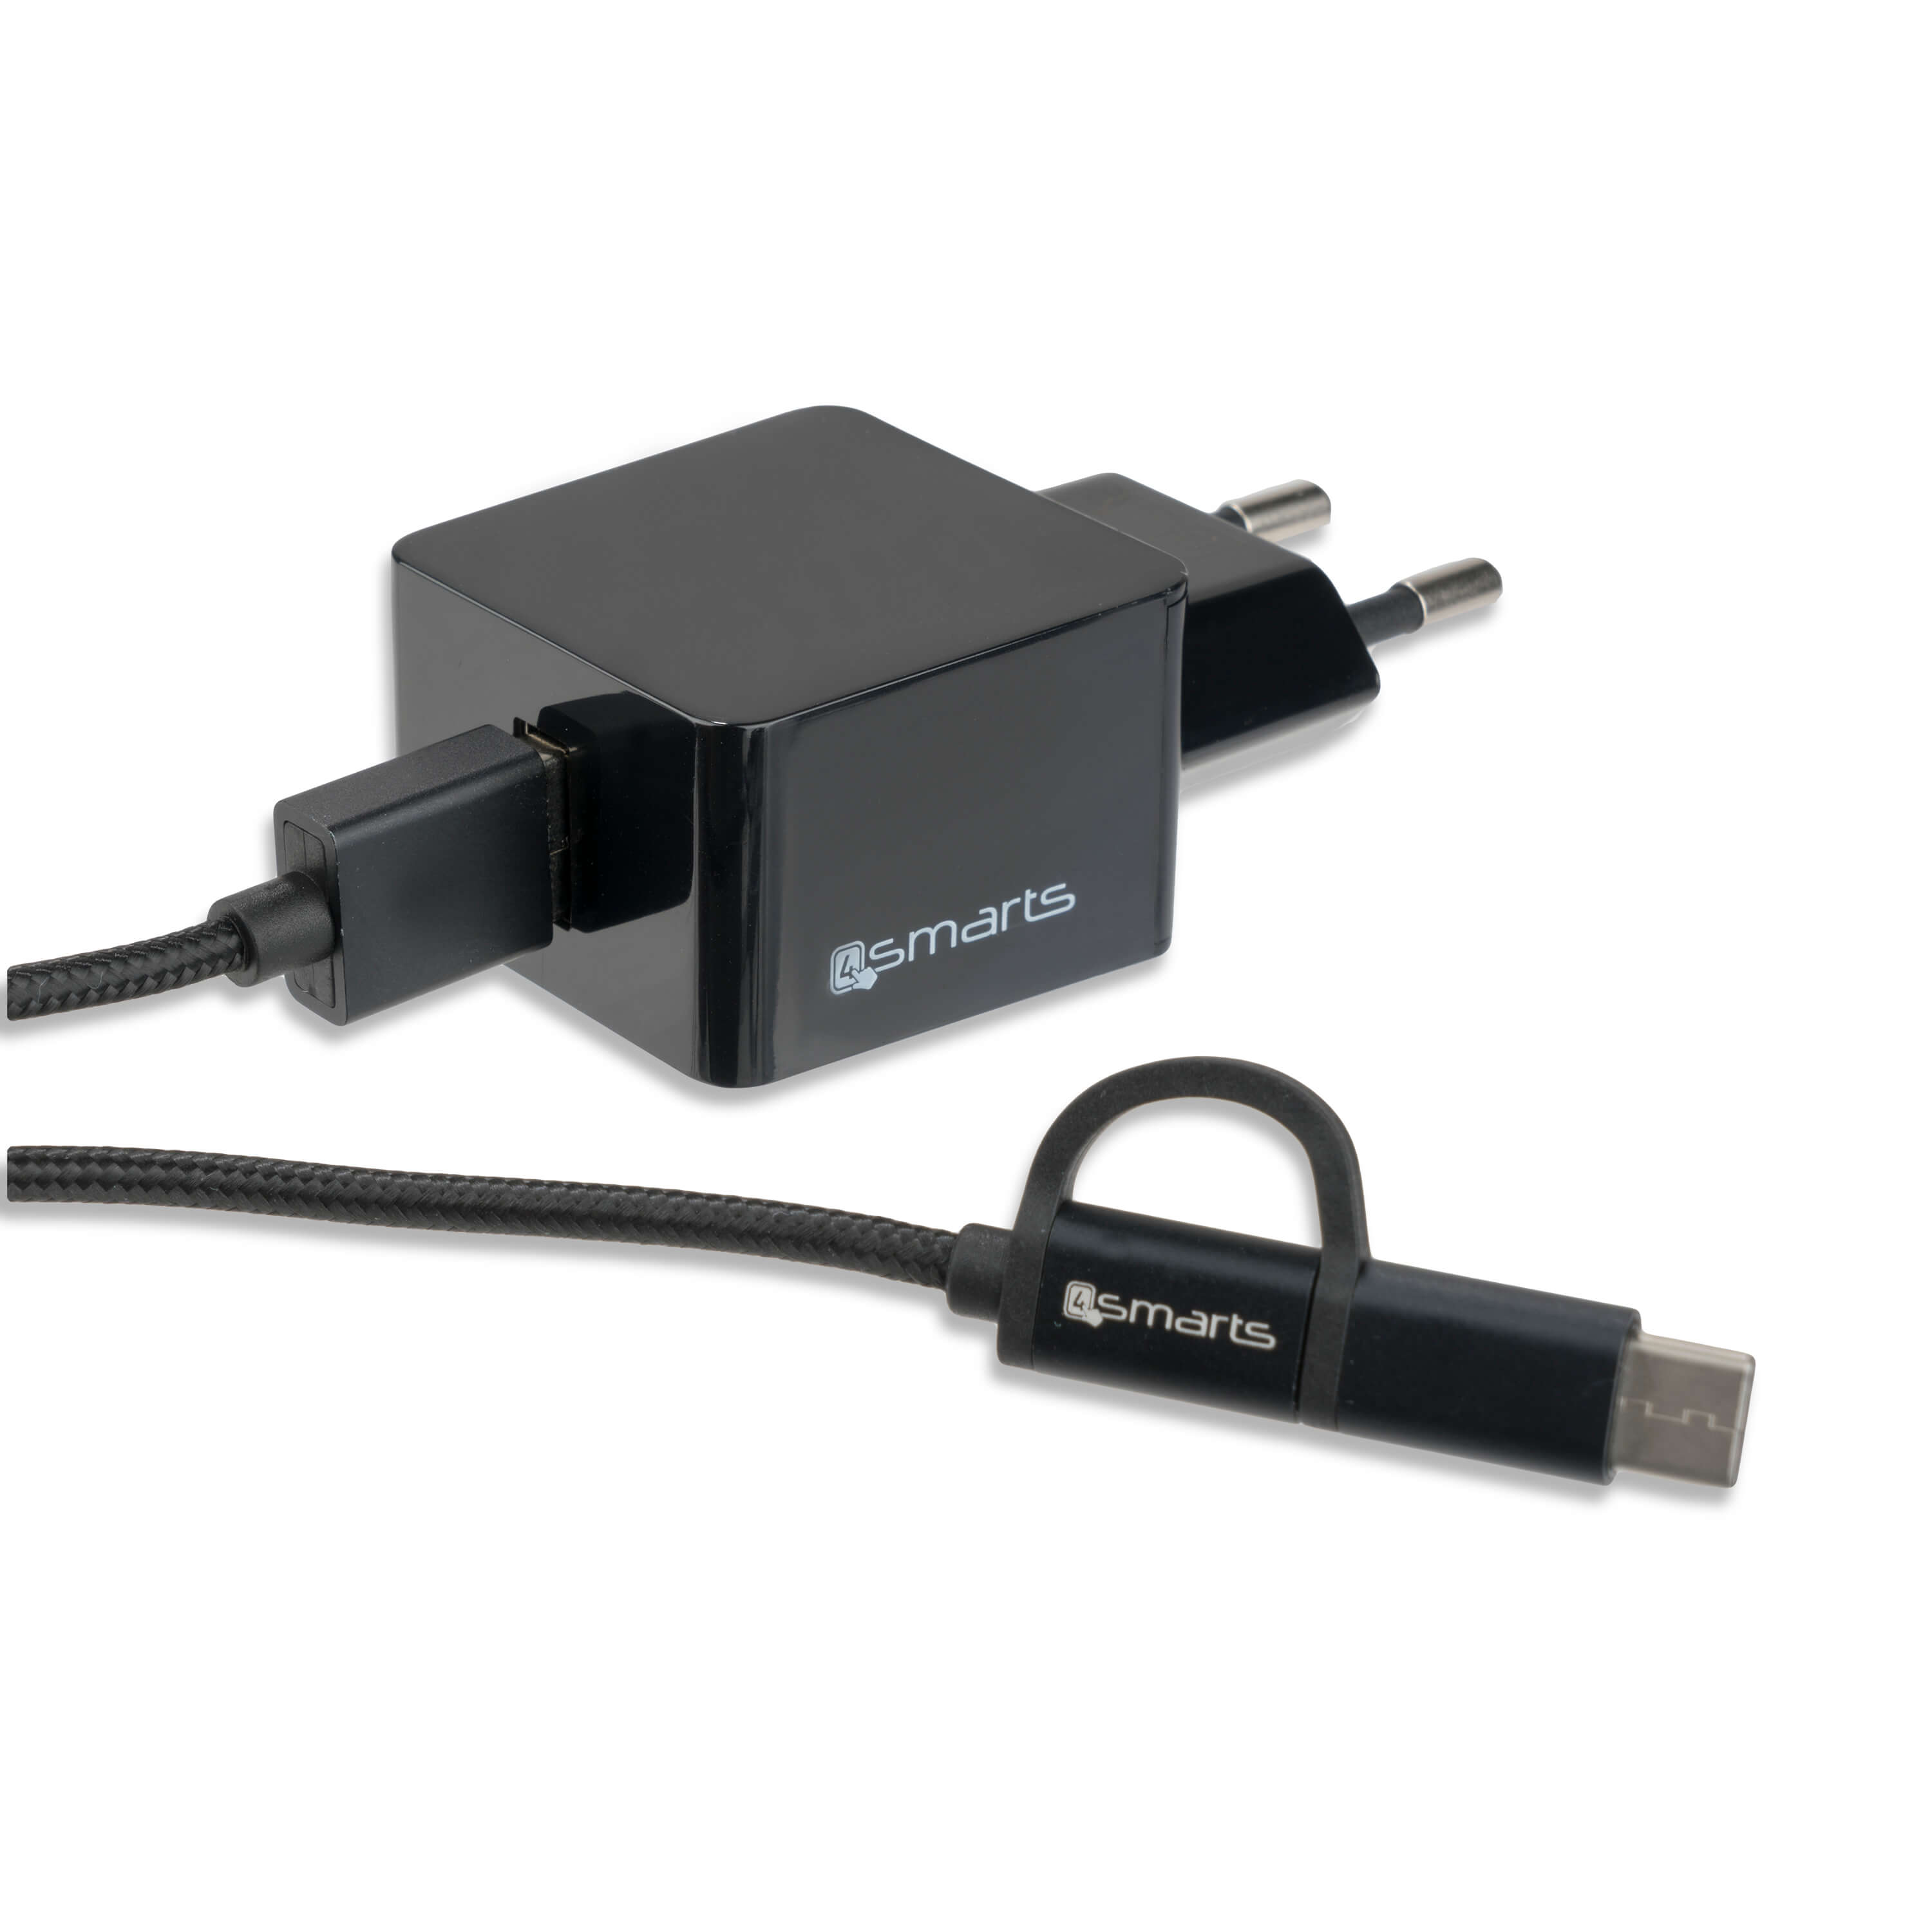 4smarts Wall Charger VoltPlug 12W - захранване за ел. мрежа 2.4A с USB изход и кабел с microUSB и USB-C стандарти